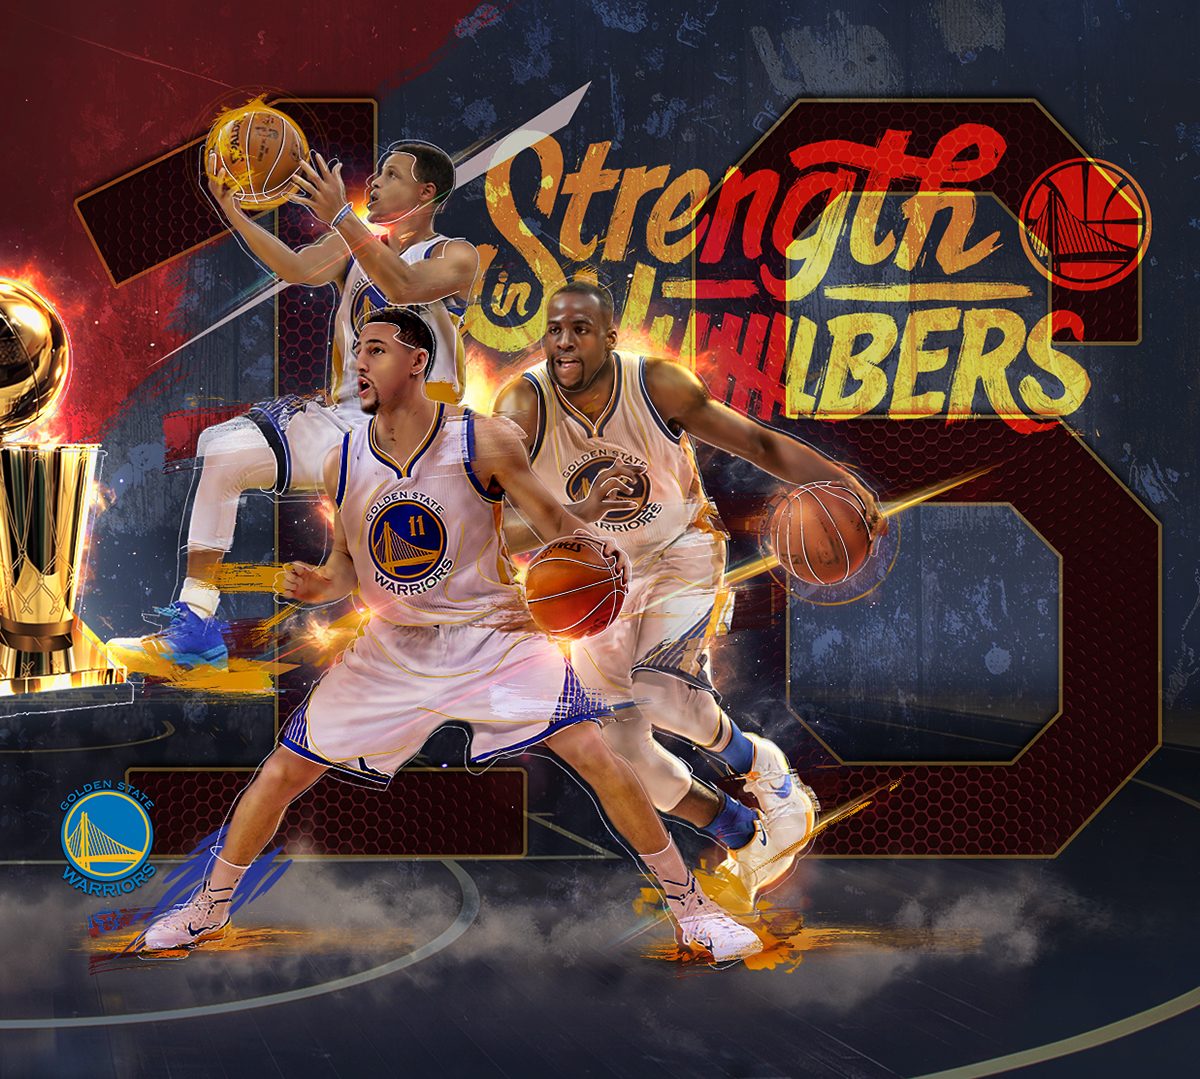 NBA cavs Cleveland Cavaliers Golden State Warriors NBA Finals Playoffs basketball fanart